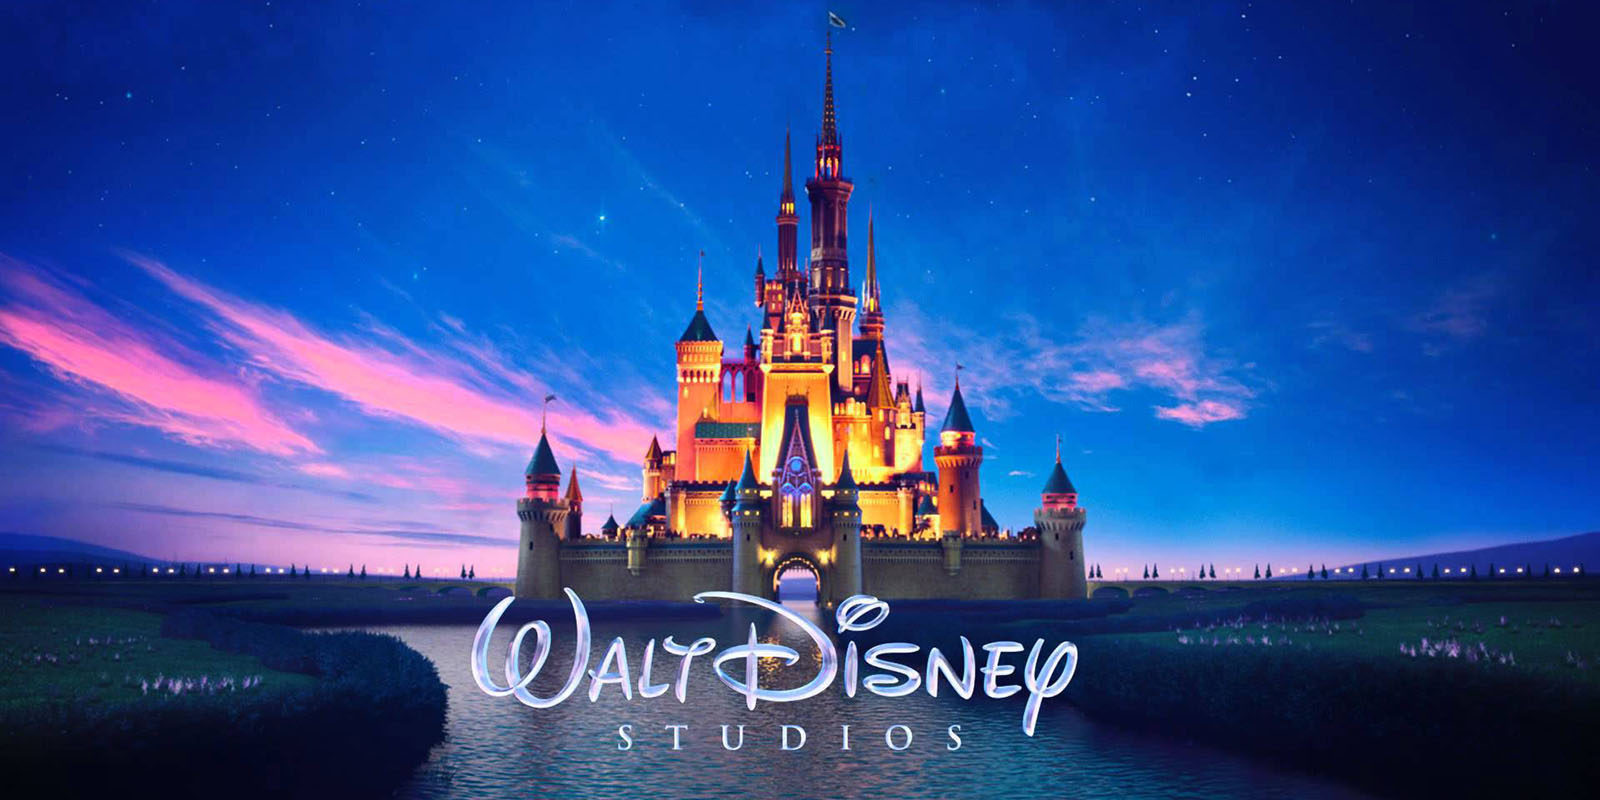 La verdad sobre los cuentos de Disney: lo macabro de los clásicos - Reportaje